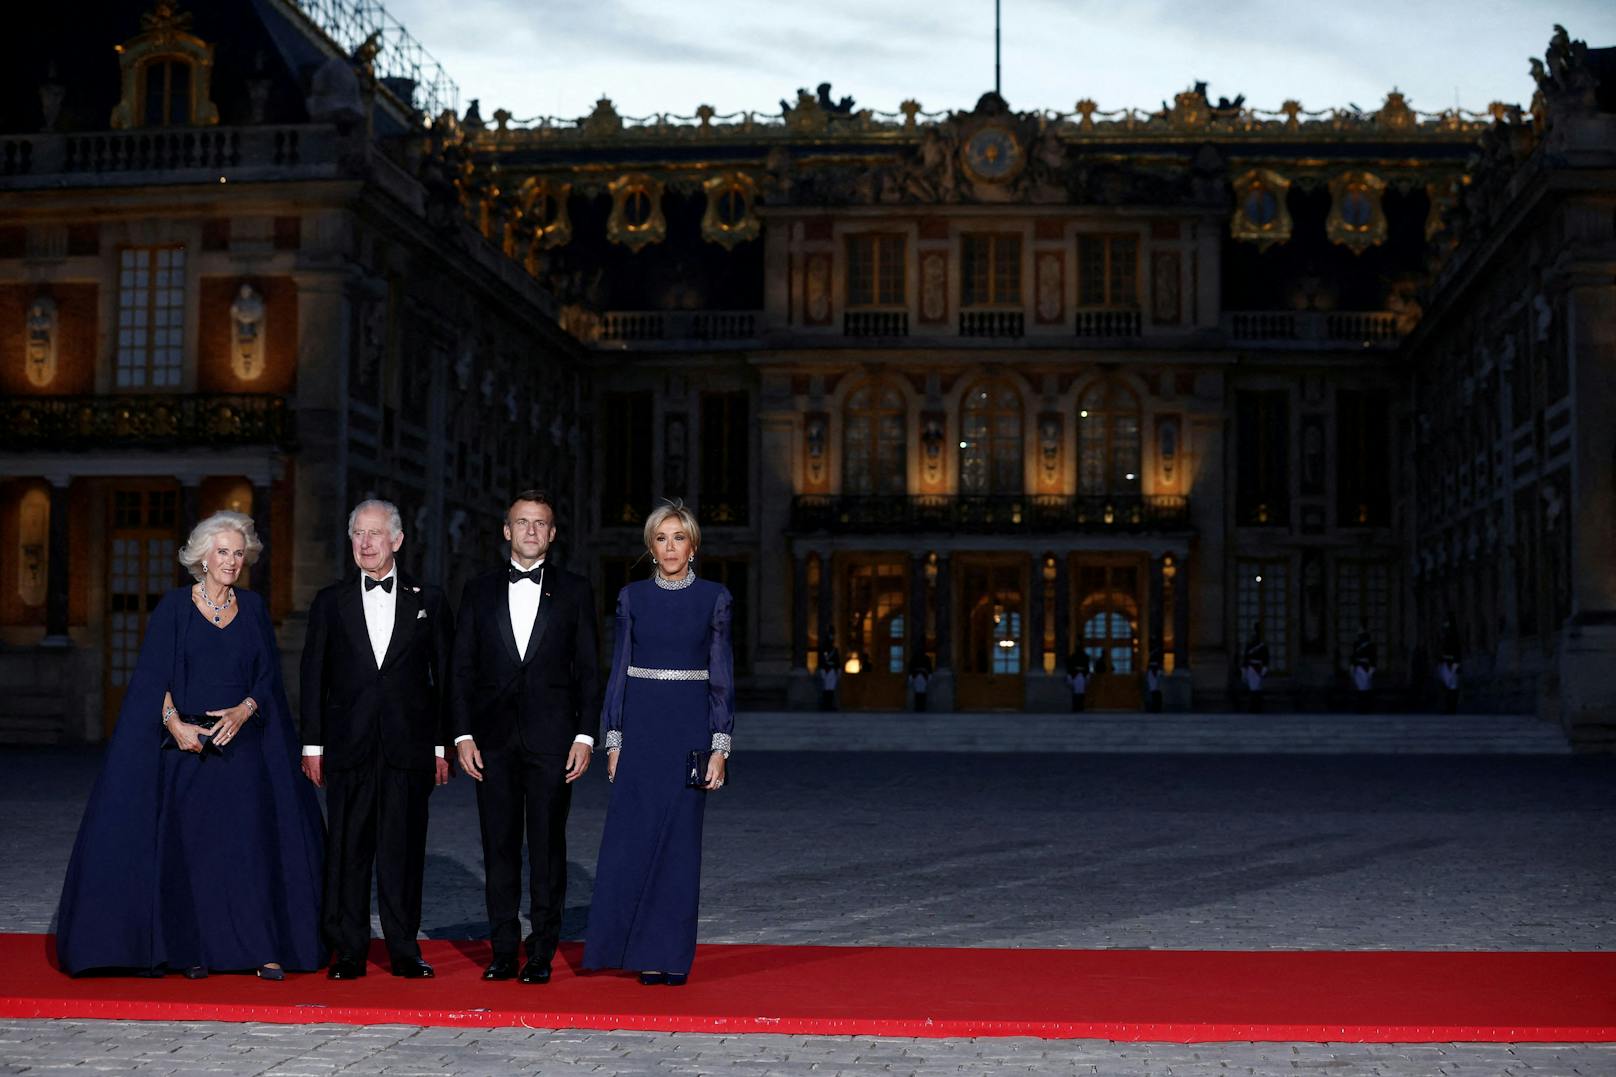 Der französische Präsident Emmanuel Macron, seine Frau Brigitte Macron, der britische König Charles und die Königin Camilla posieren bei ihrer Ankunft zu einem Staatsessen im Chateau de Versailles (Schloss Versailles).